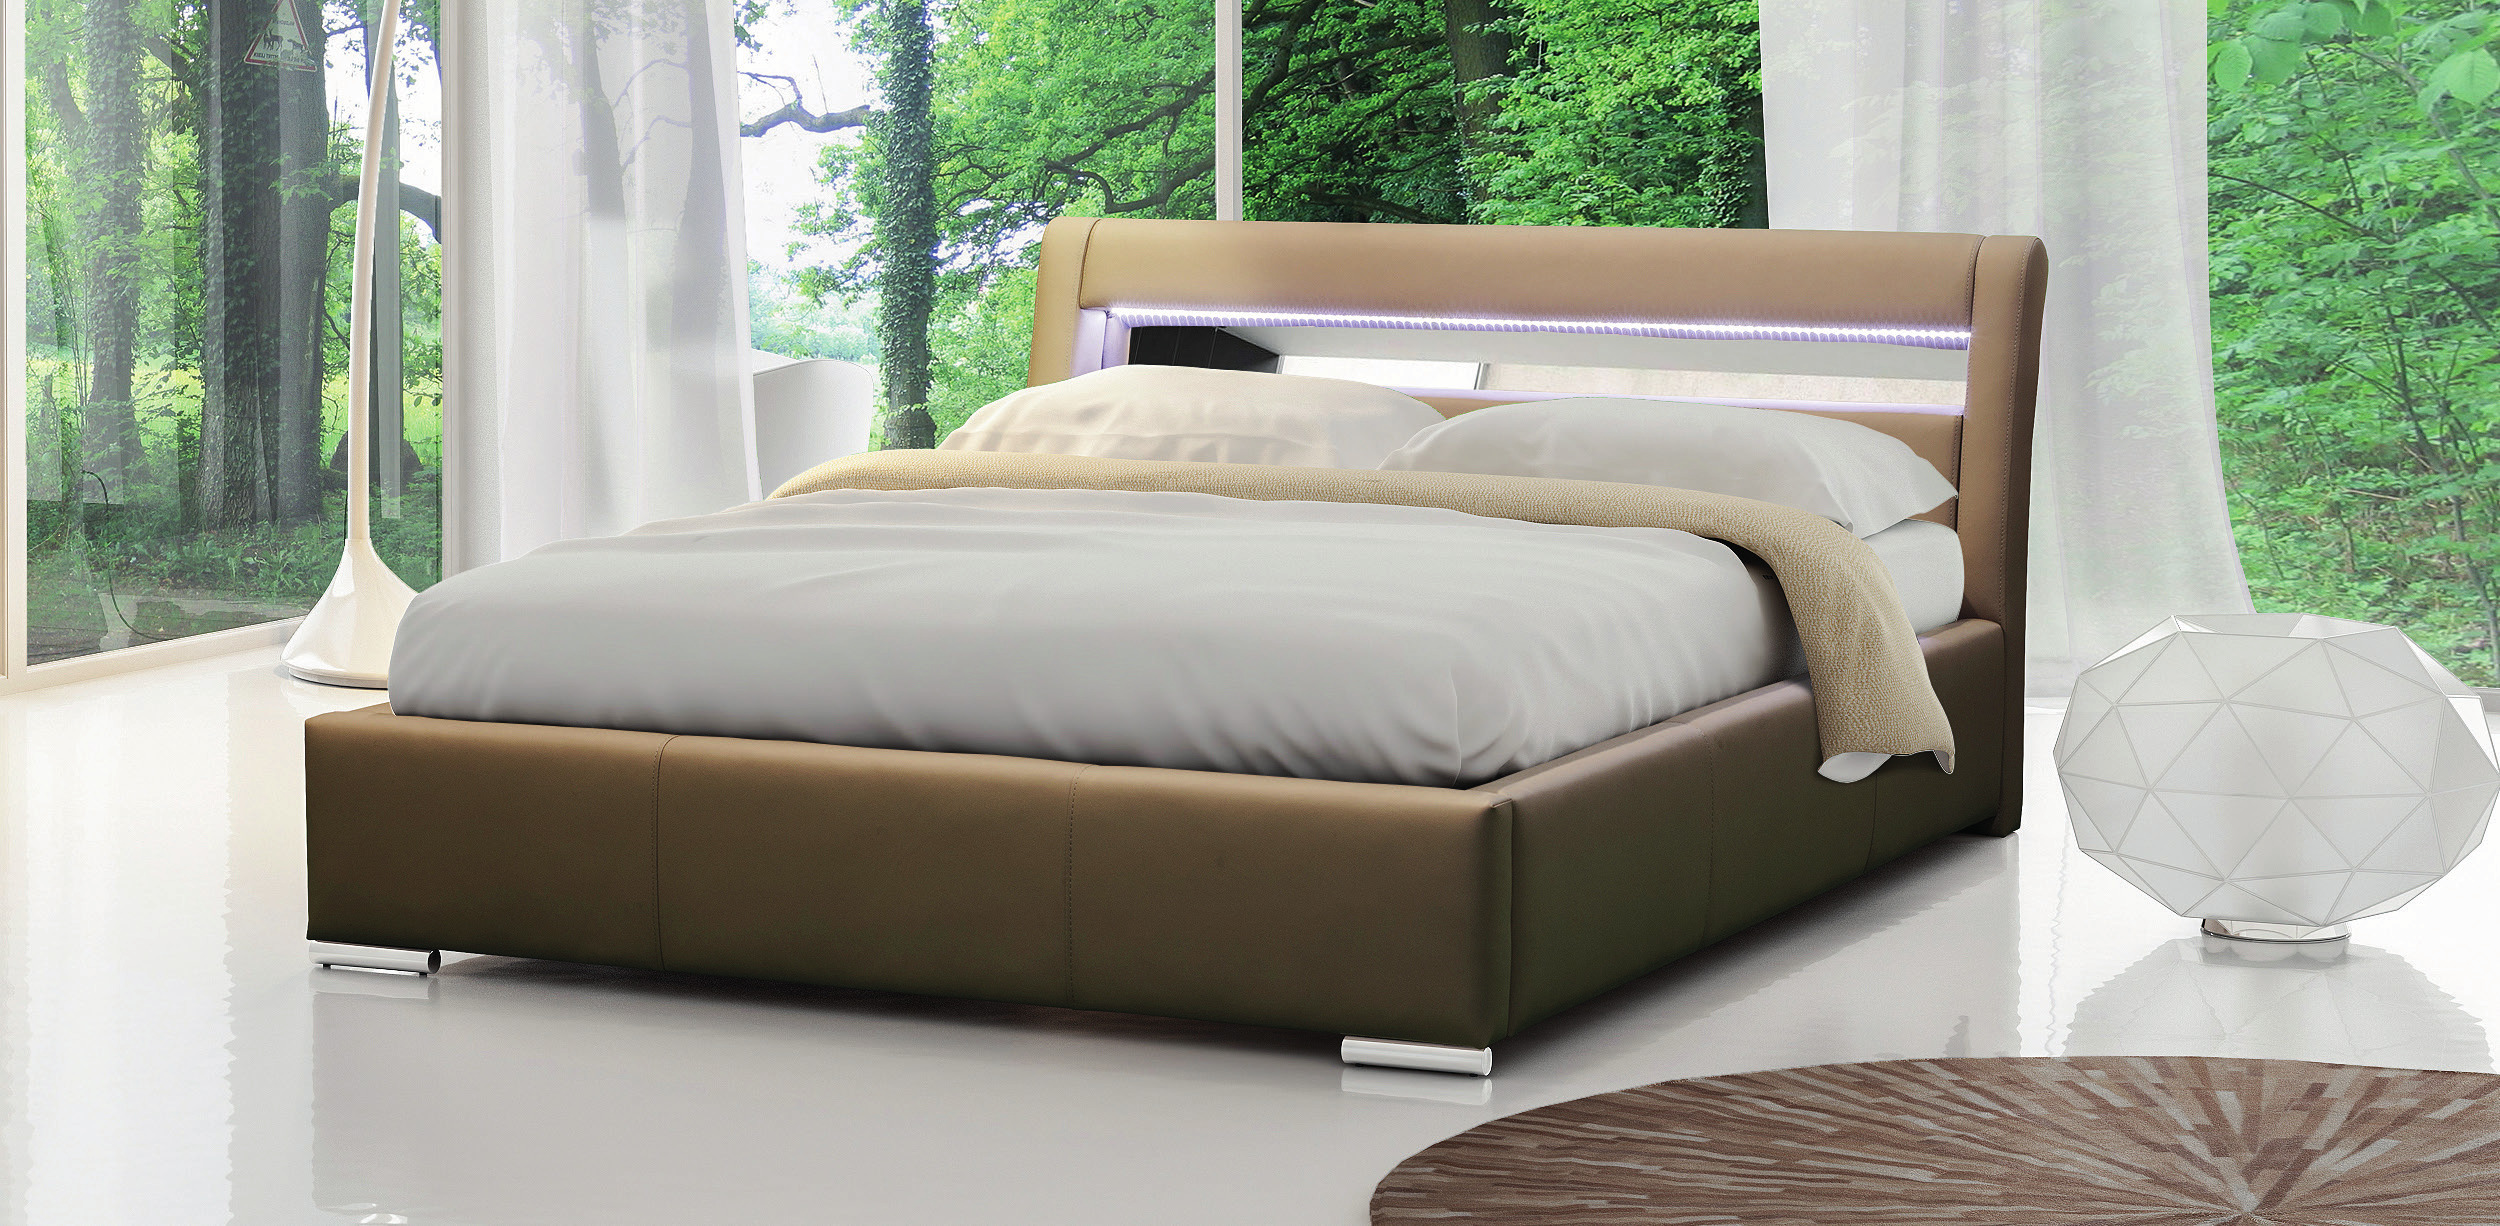 Рейтинг качества кроватей. Красивая кровать двуспальная. Кровать мягкая двуспальная. Кровать с высоким матрасом. Кровать 200х200.